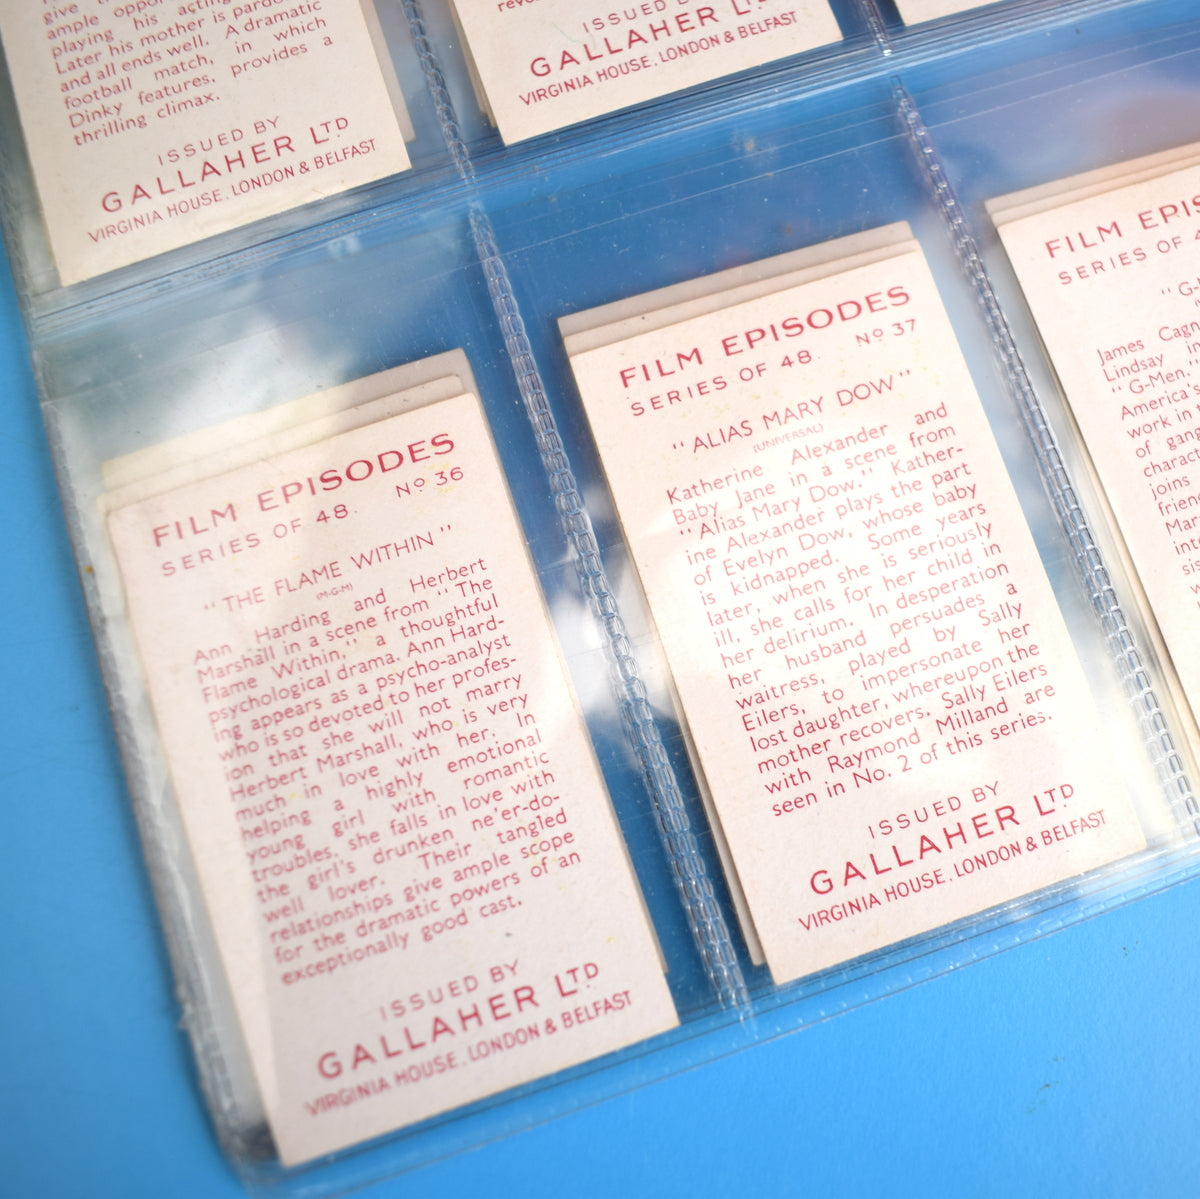 Vintage 1930s Gallaher Cigarette Cards- Film Episodes - Full Set